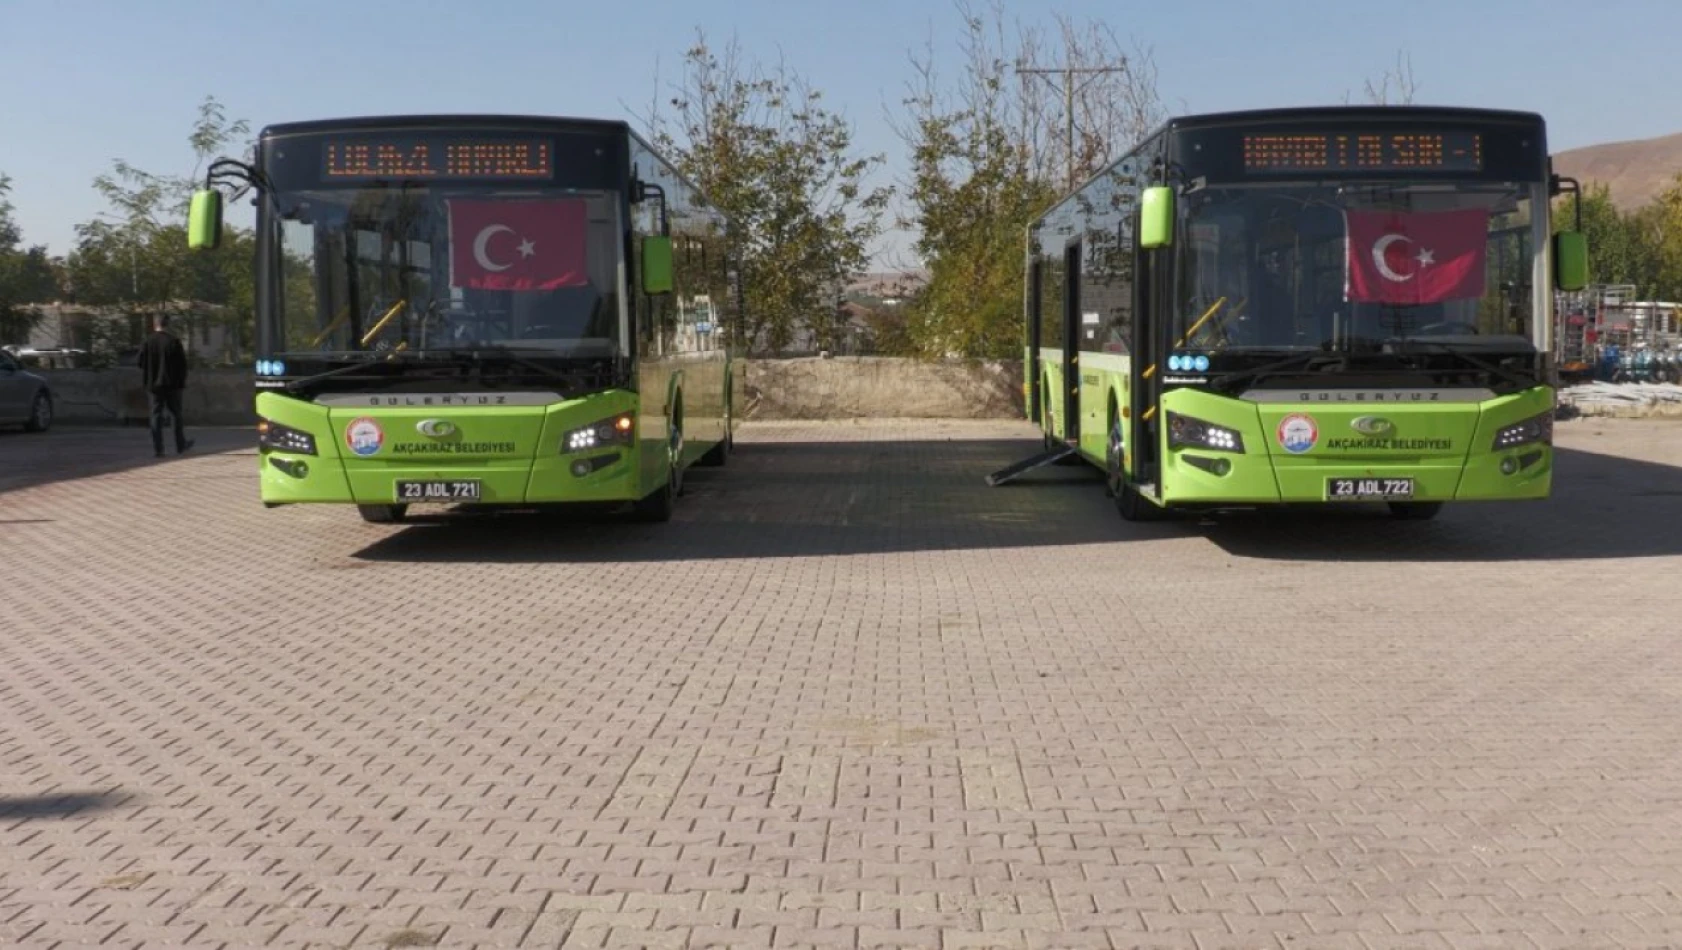 Akçakiraz'da lise öğrencilerine halk otobüsleri ücretsiz oldu